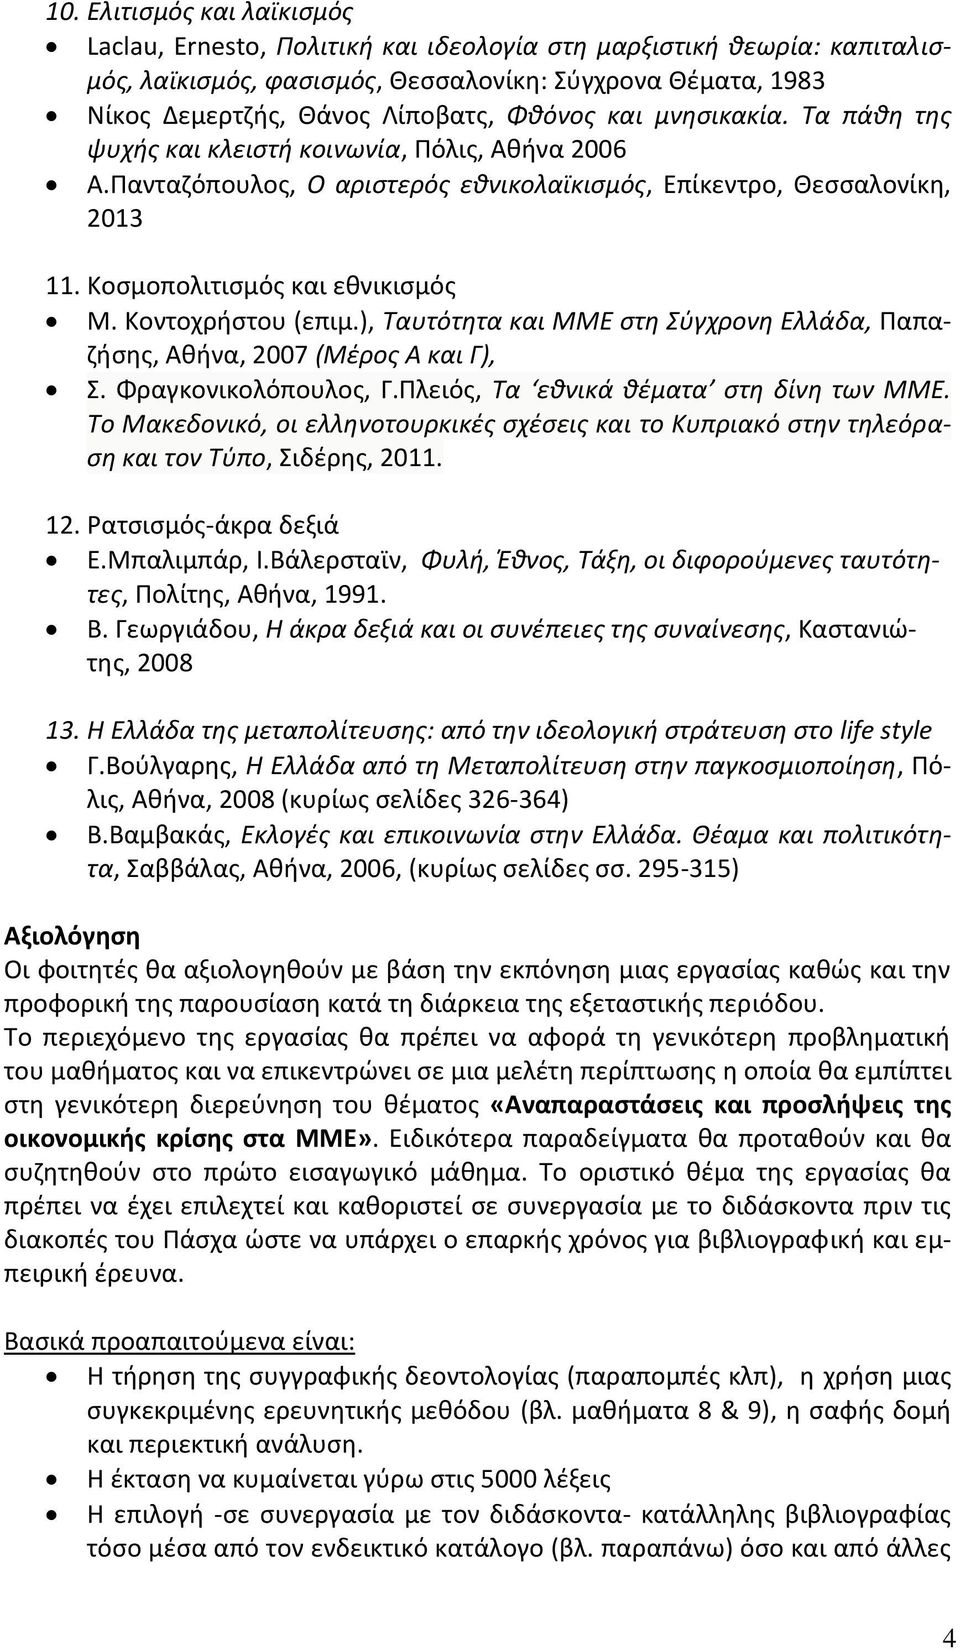 Κοντοχρήστου (επιμ.), Ταυτότητα και ΜΜΕ στη Σύγχρονη Ελλάδα, Παπαζήσης, Αθήνα, 2007 (Μέρος Α και Γ), Σ. Φραγκονικολόπουλος, Γ.Πλειός, Τα εθνικά θέματα στη δίνη των ΜΜΕ.